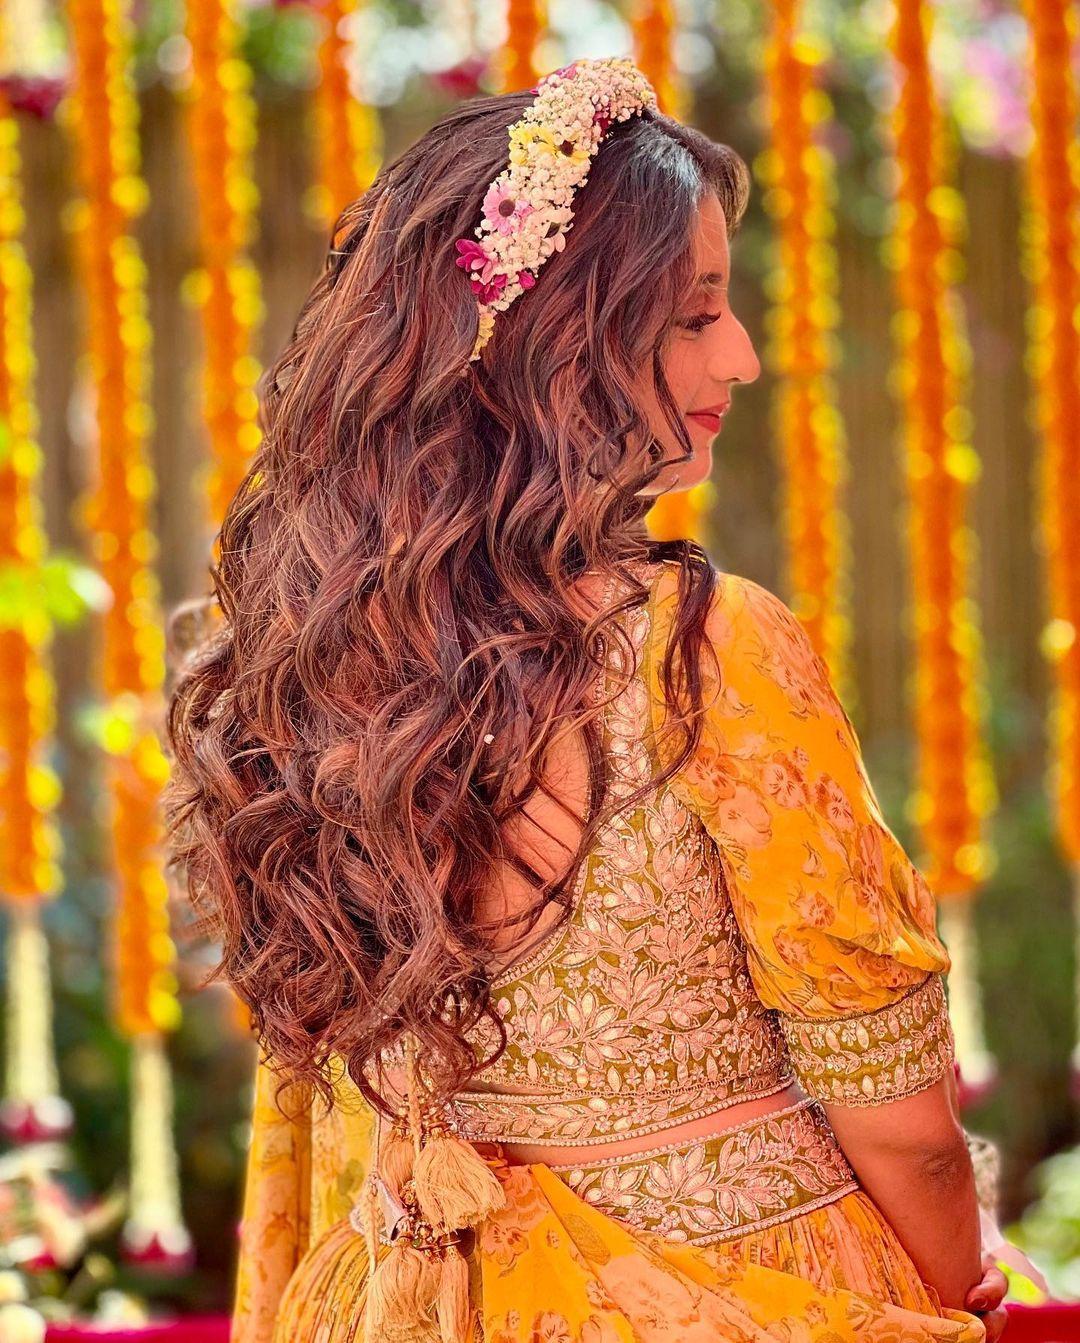 Kiara Advani Hairstyle Inspiration For Brides-To-Be